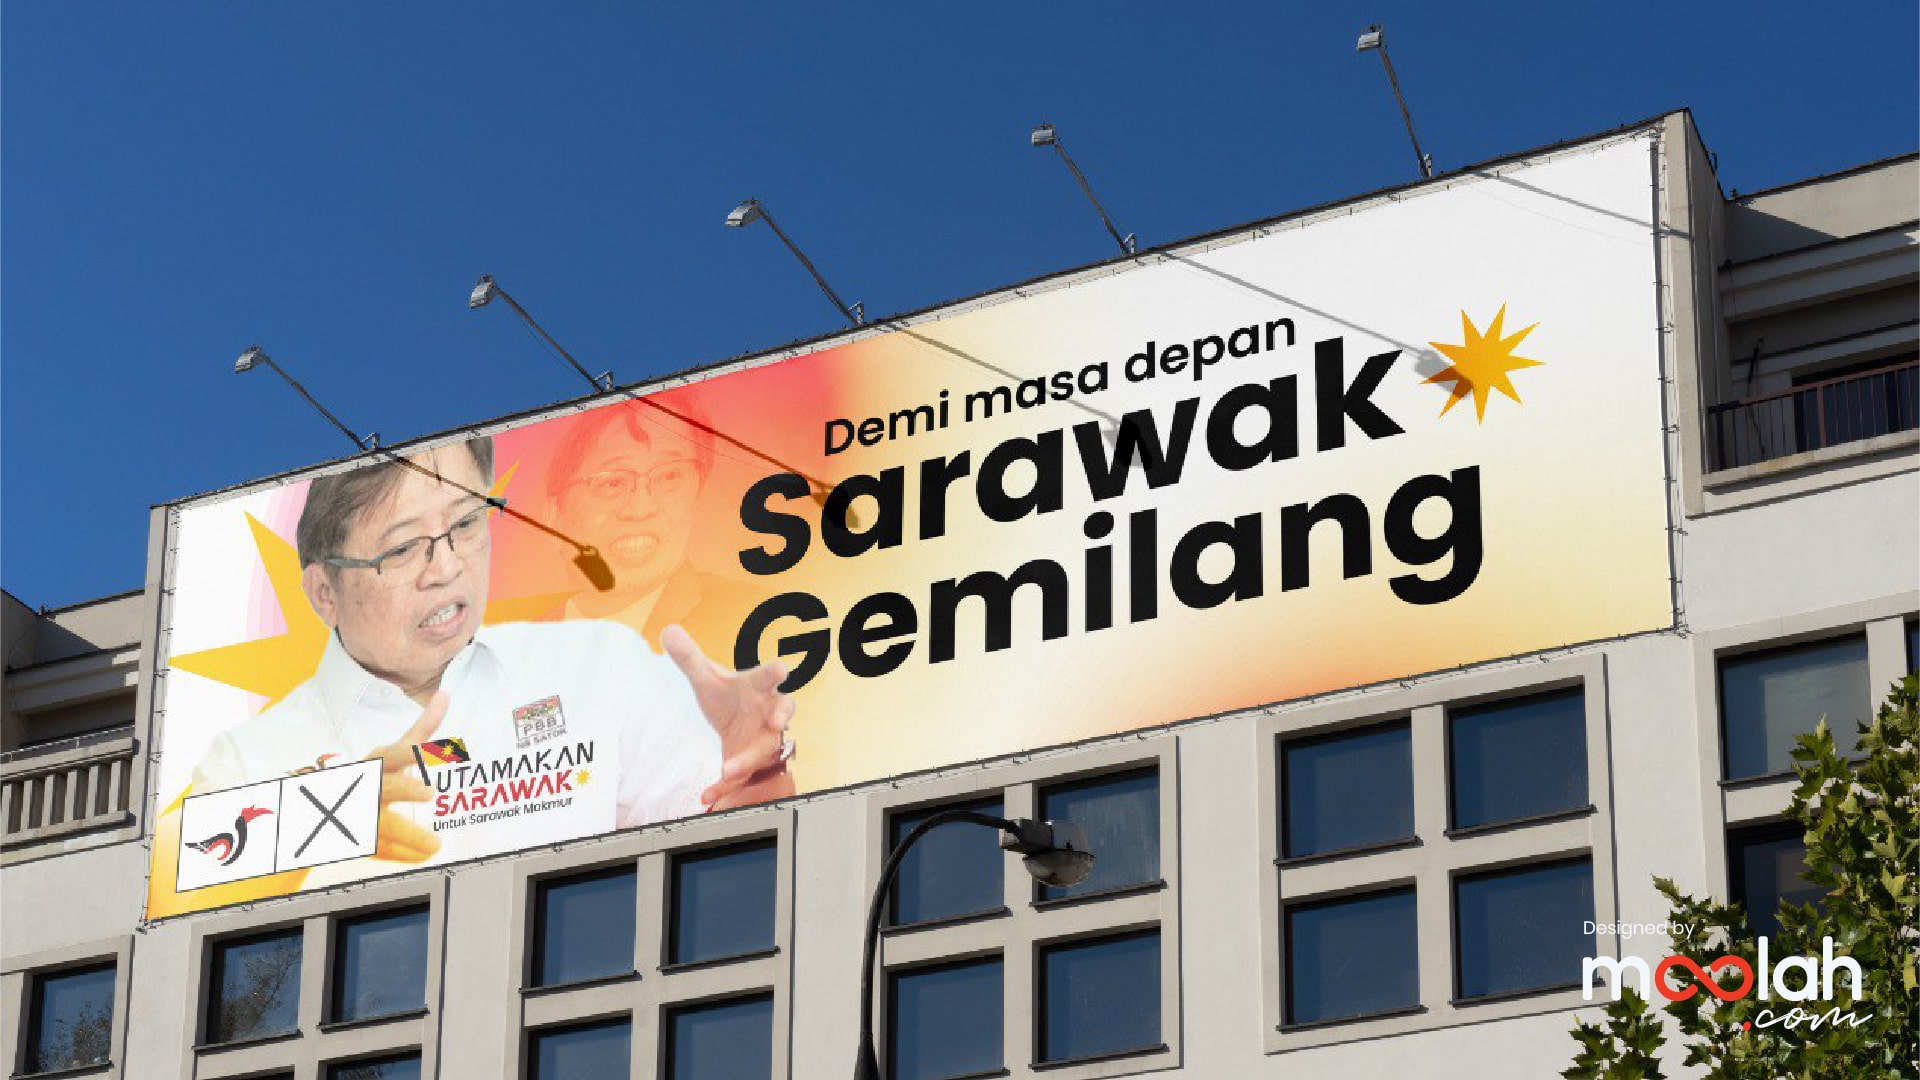 Utamakan Sarawak Logo Campaign 06 min Moolah Design